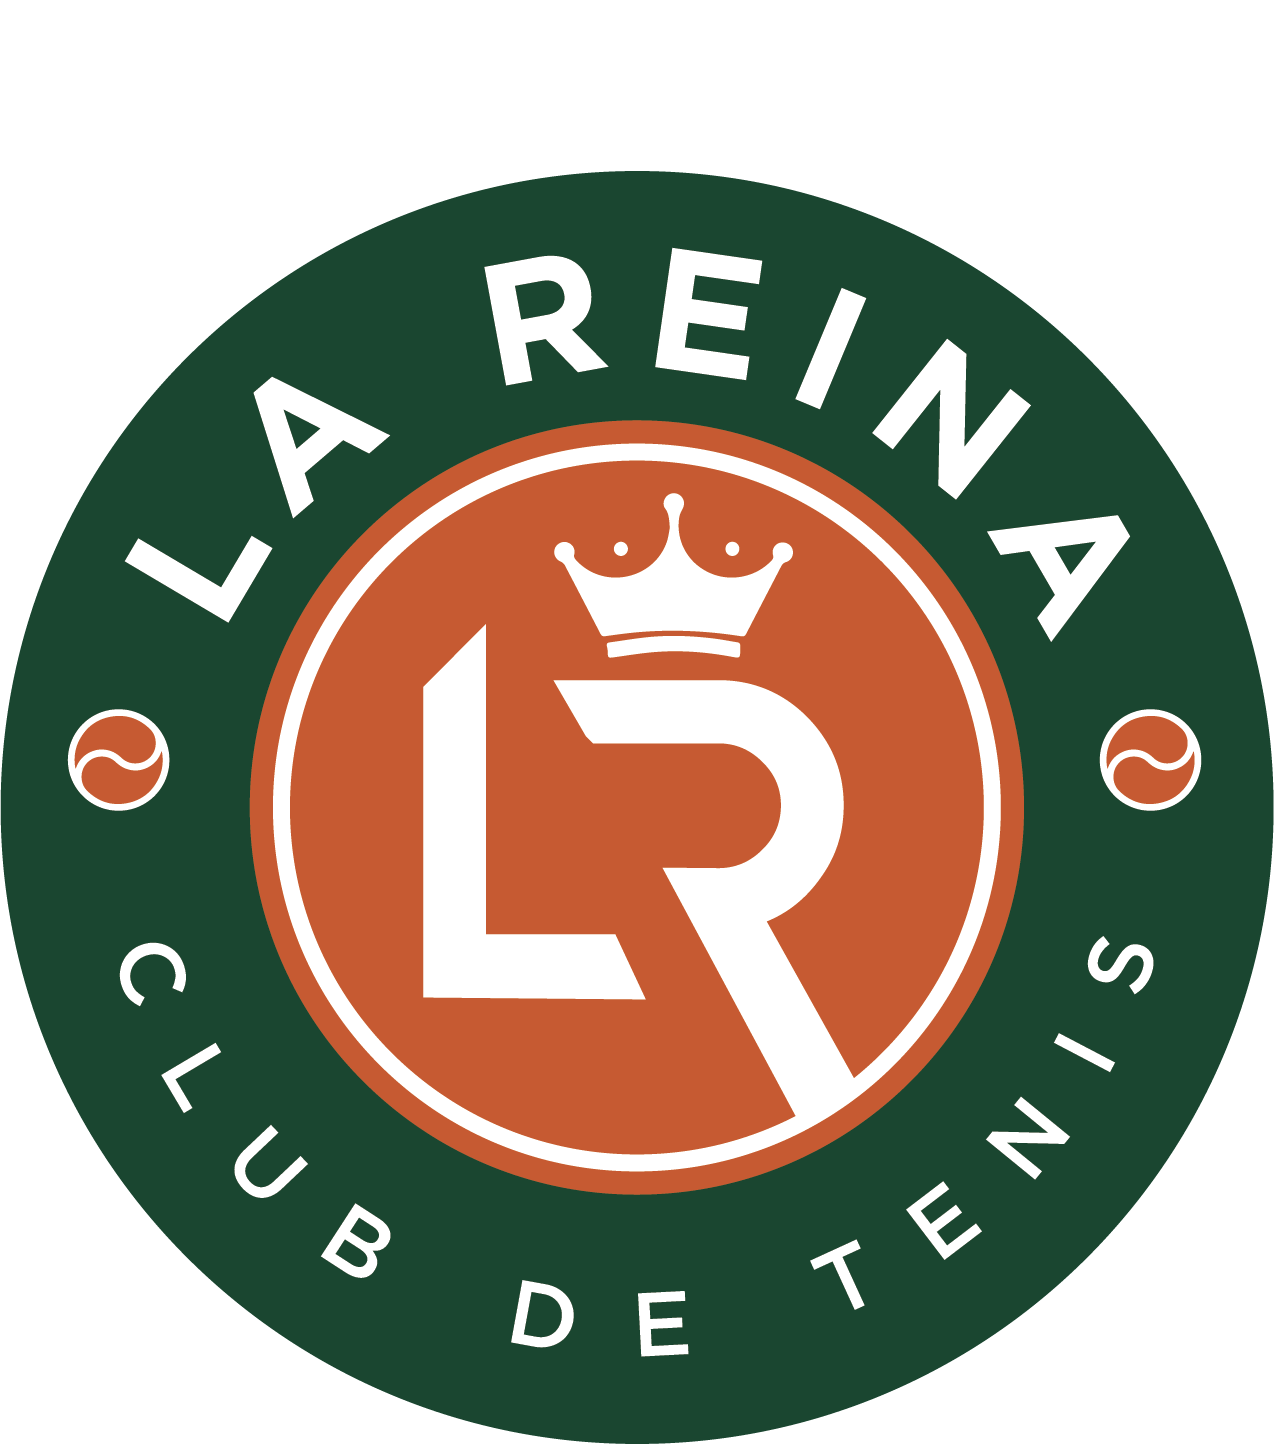 Club de Tenis La Reina